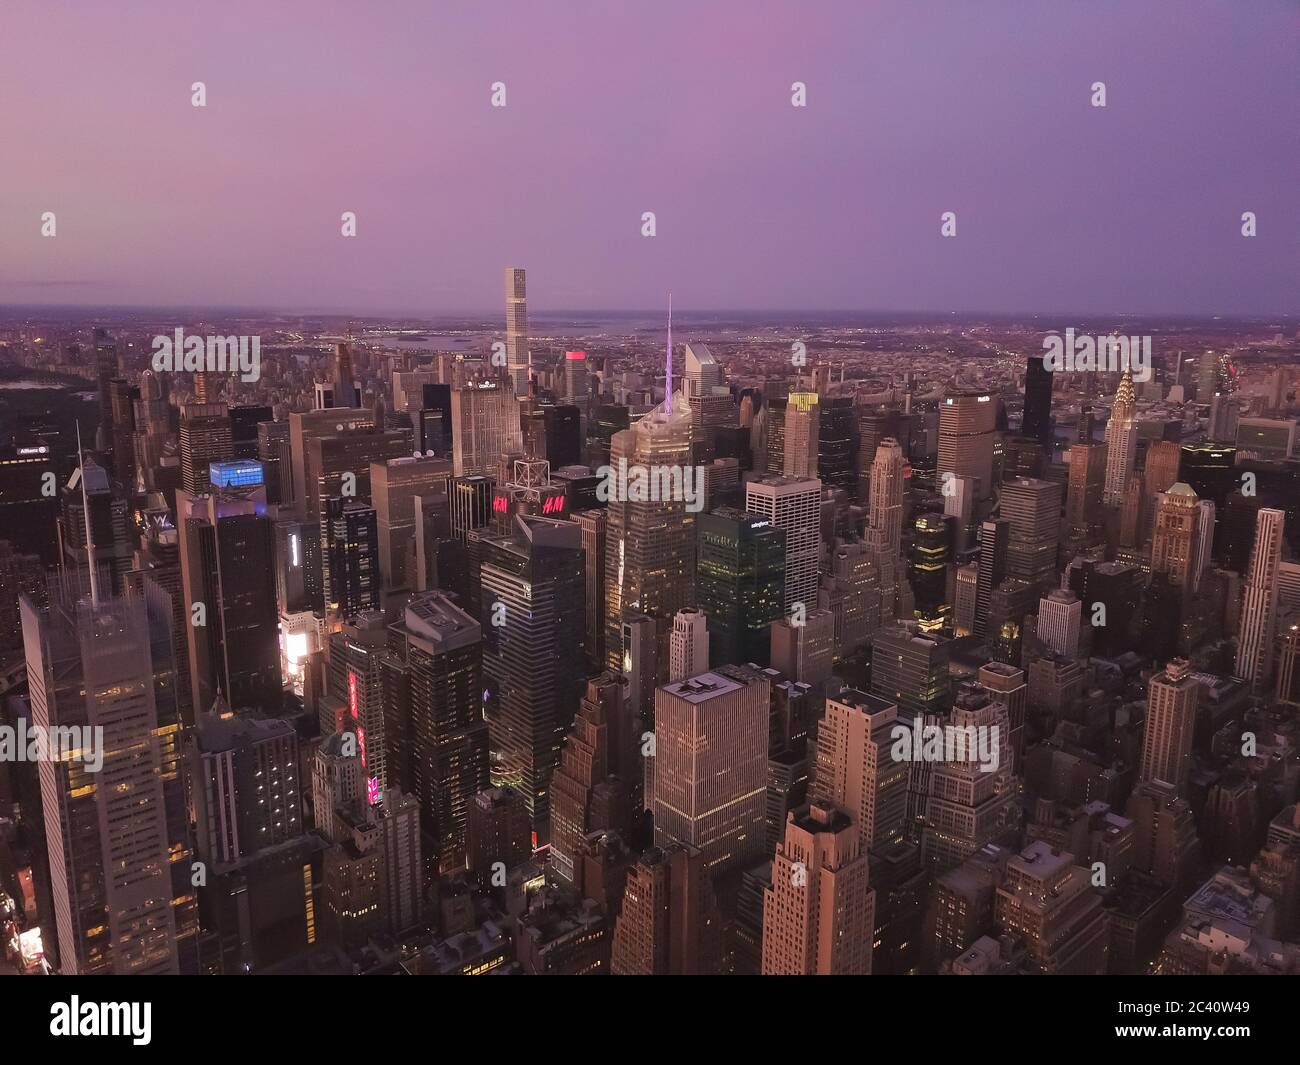 Luftaufnahme des Herzens von Manhattan, New York City mit hohen Wolkenkratzern direkt nach Sonnenuntergang in Dämmerung Licht Stockfoto